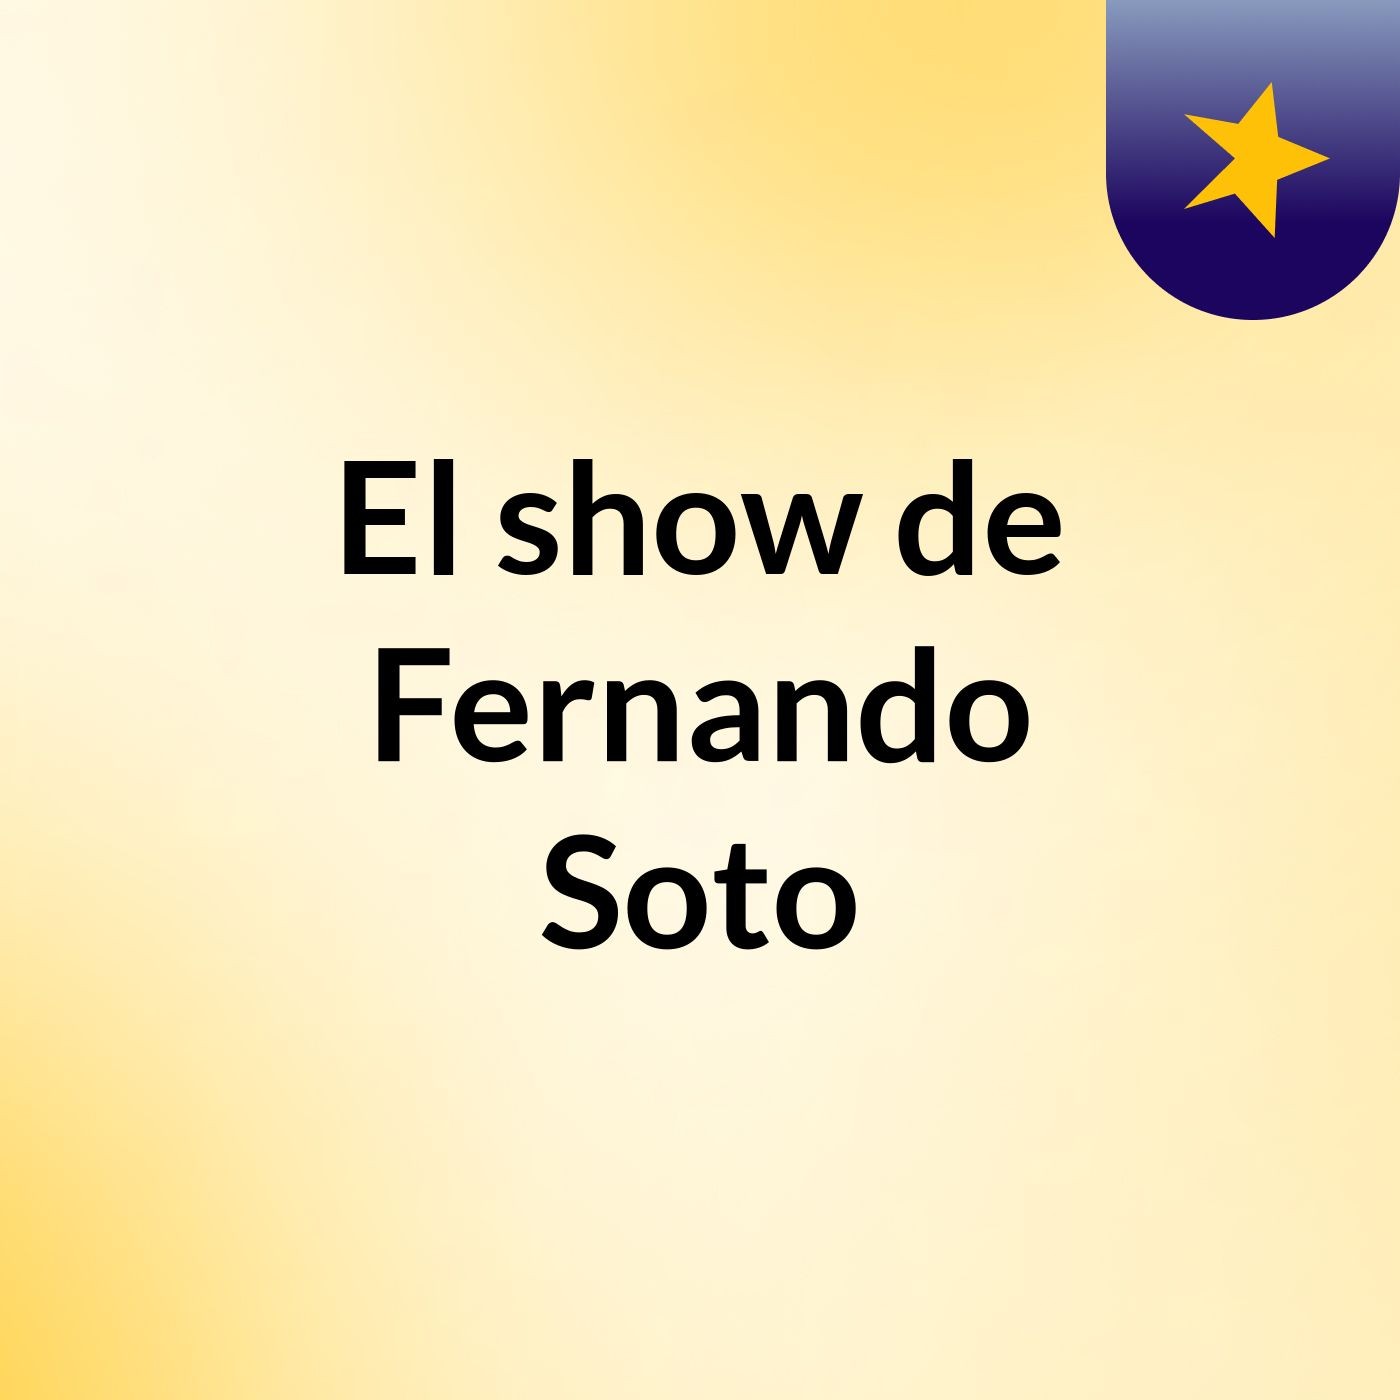 El show de Fernando Soto